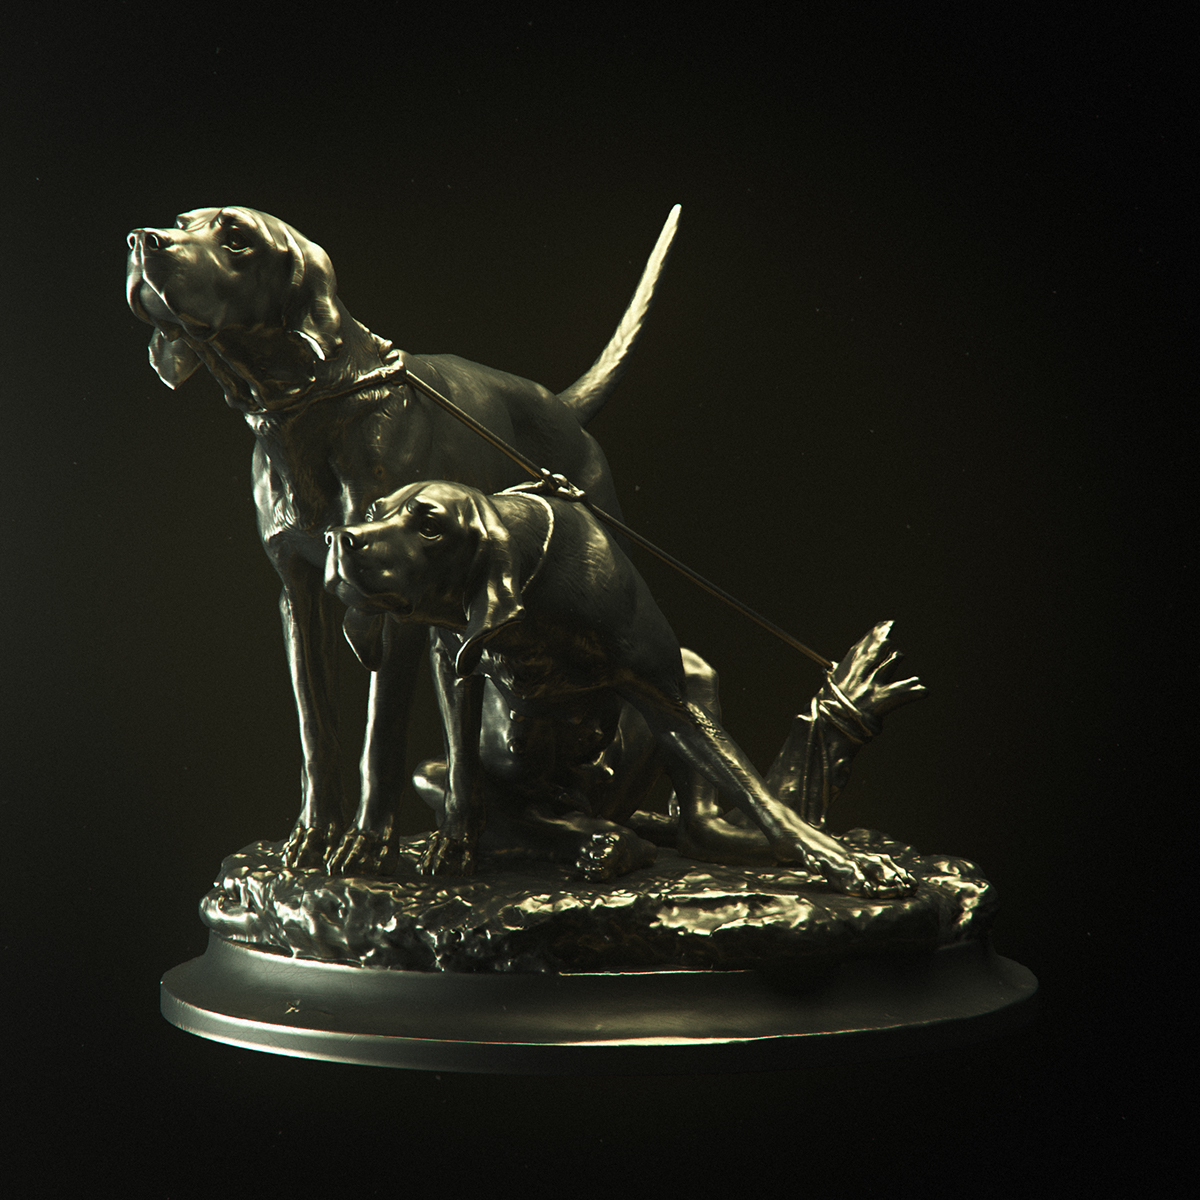 octane Render rendering 3D scan maxon Cinema 4d sculptures animals